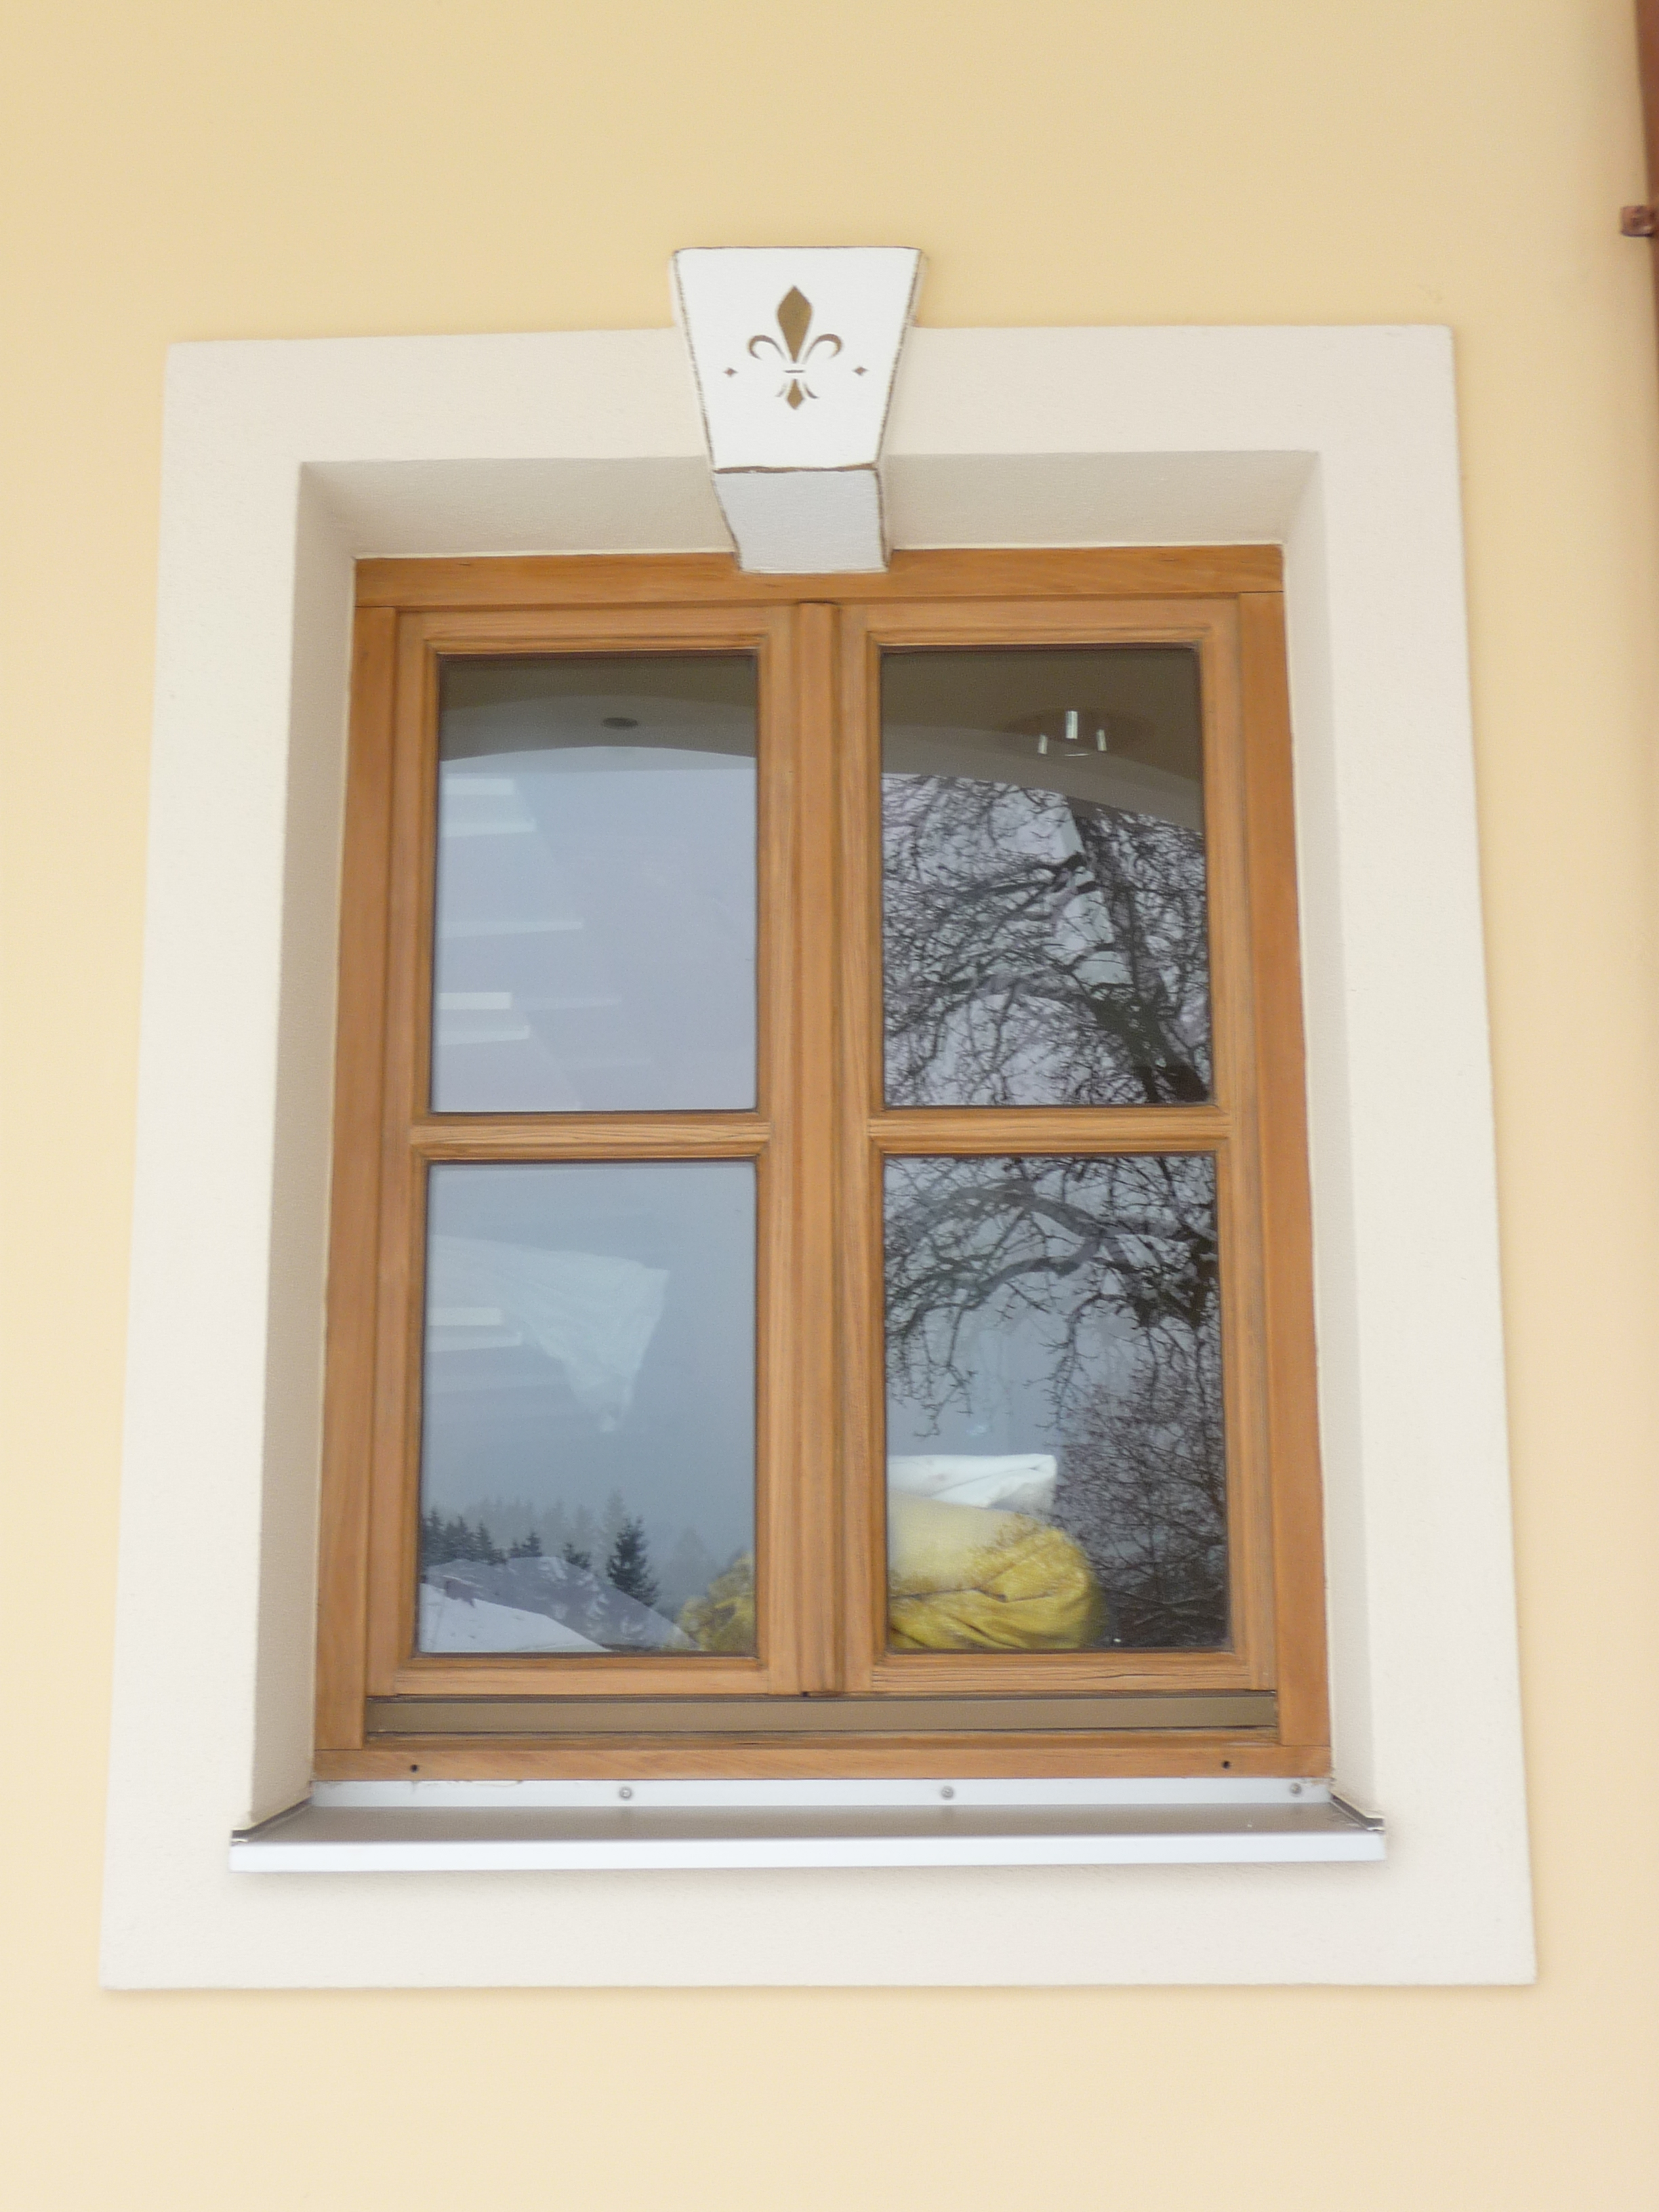 Fenster bei Vollwärmeschutz mit Lisene Positiv und Schlußstein Positiv